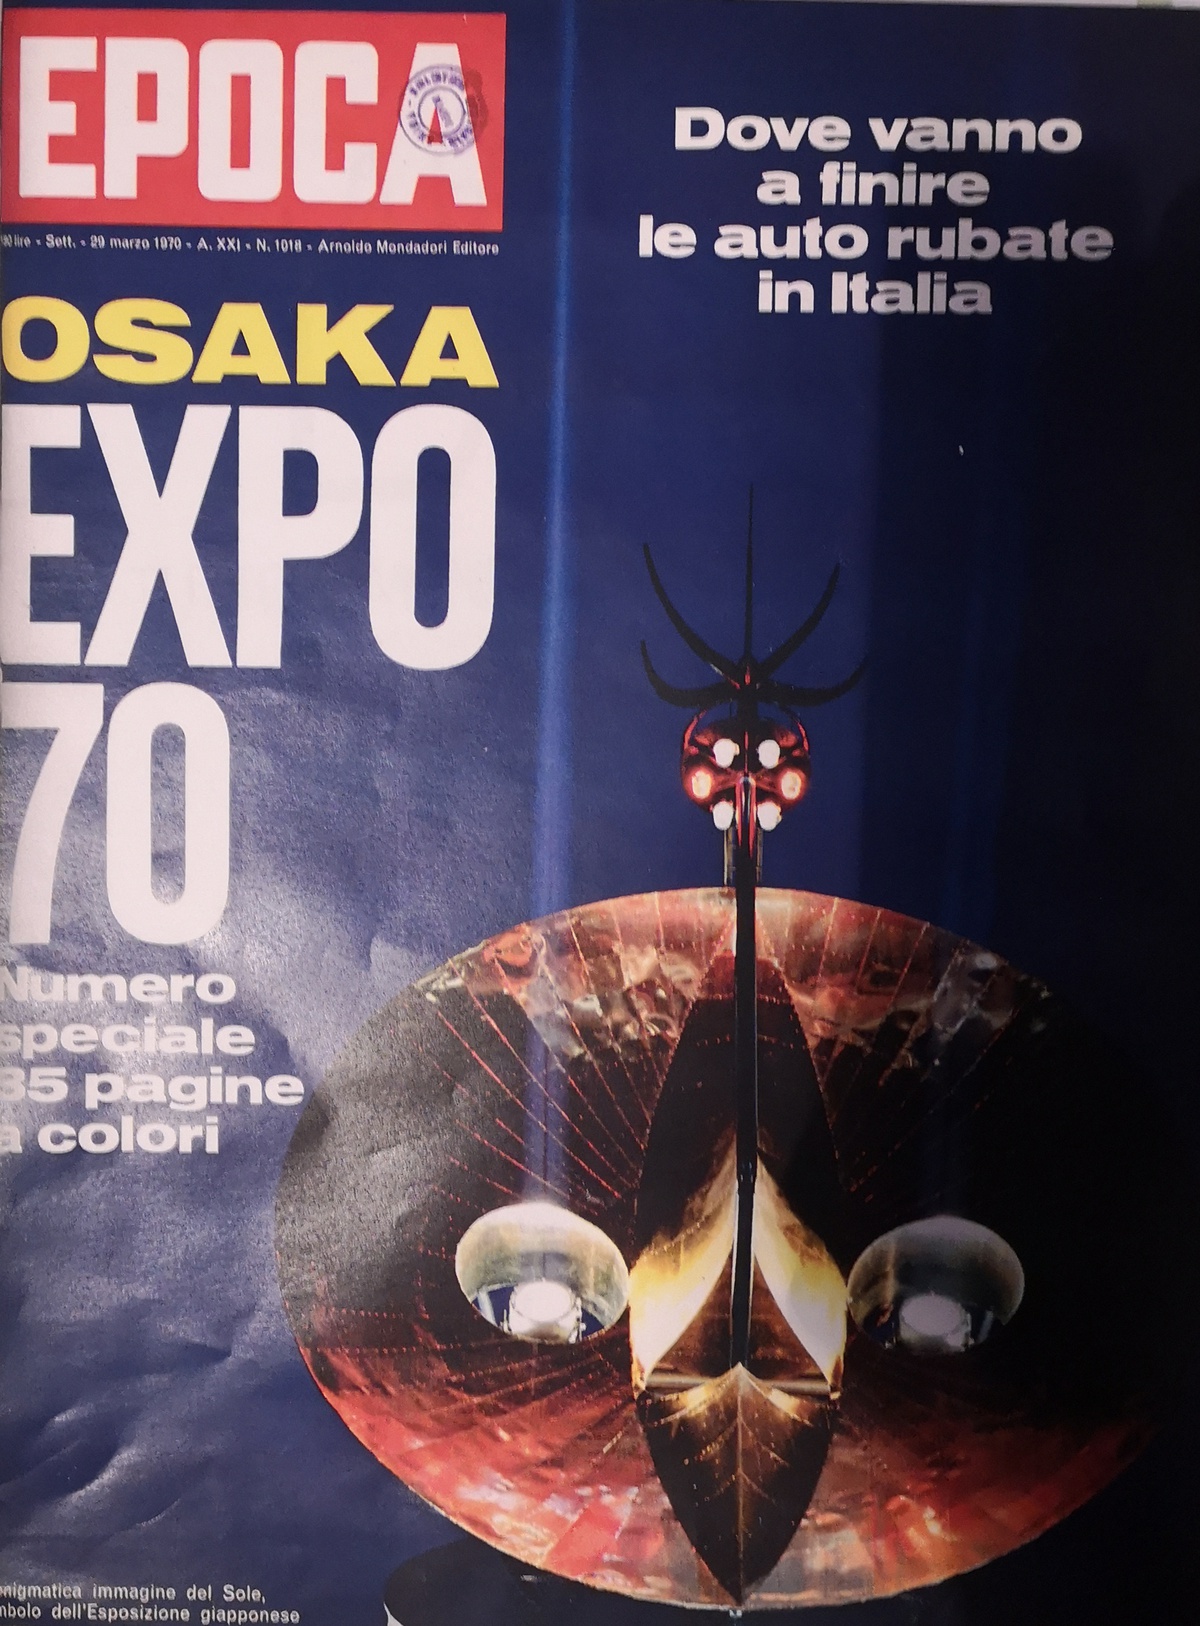 storia, design del progetto, rivista Epoca 1018, 29 marzo 1970, Expo Osaka 1970, FVG